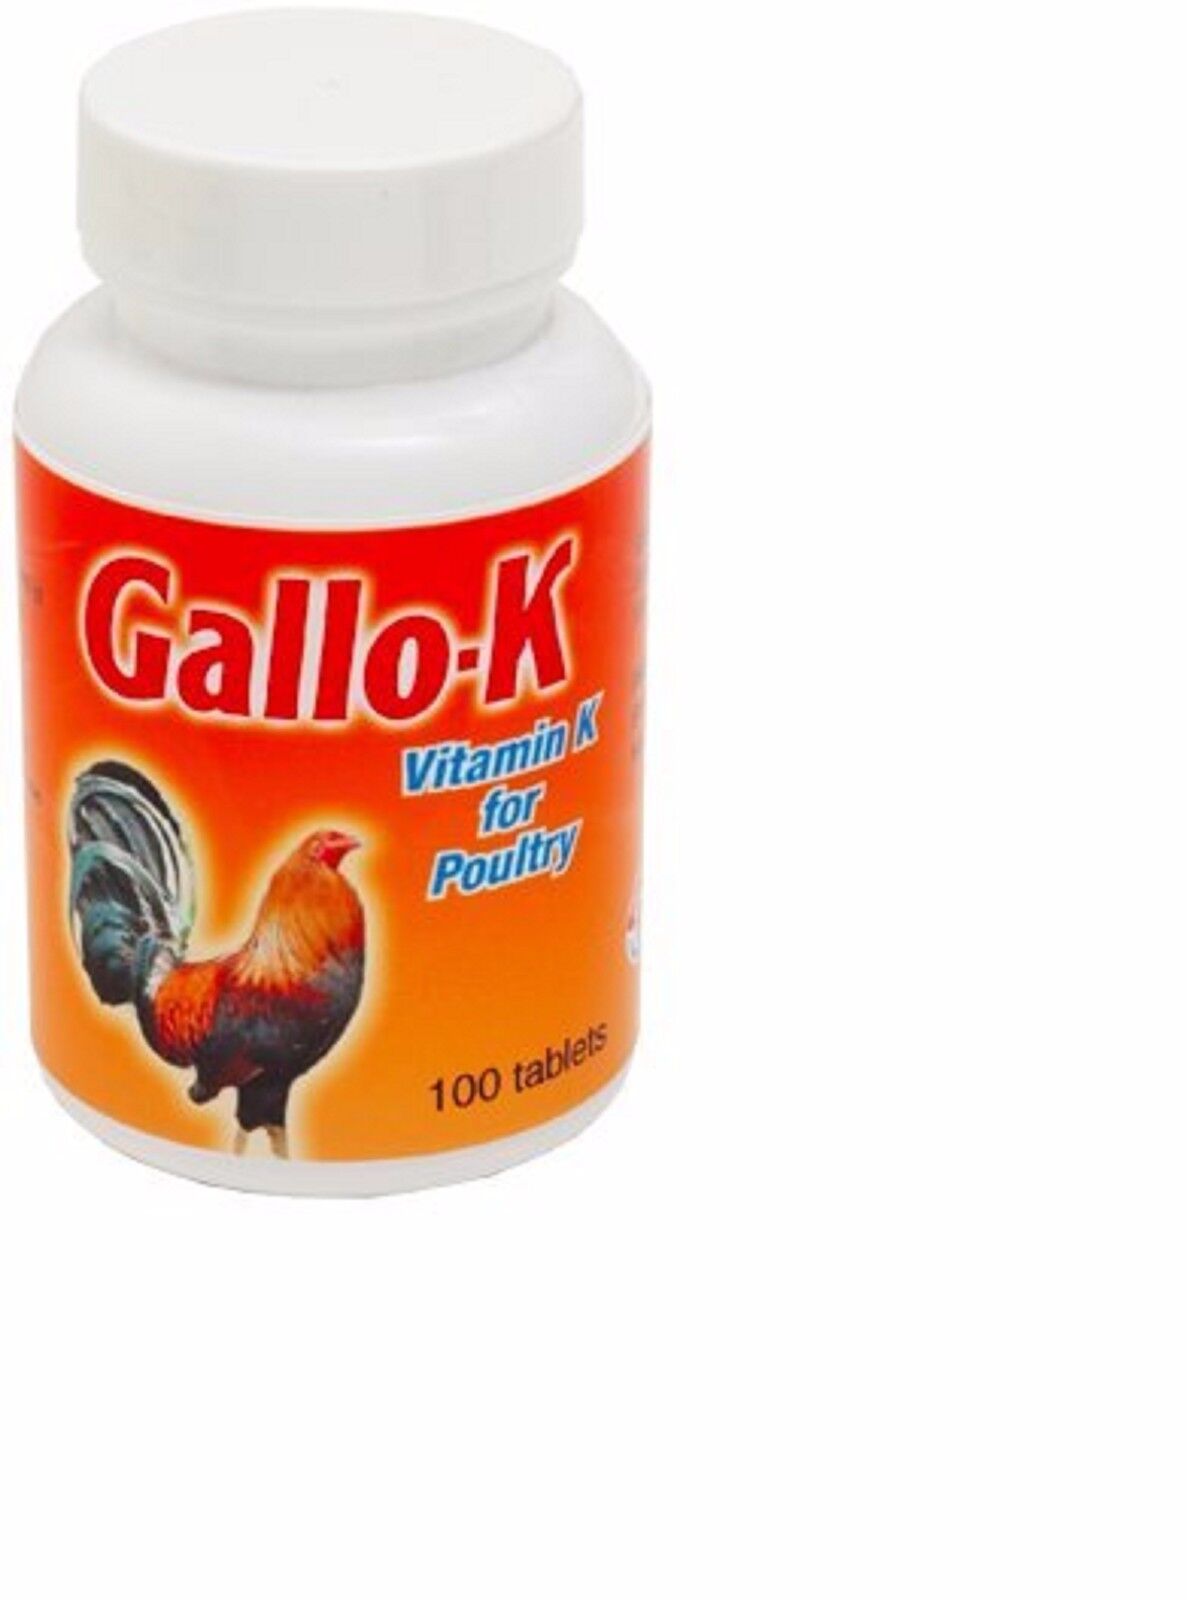 GALLO-K 100 TABLETS, 